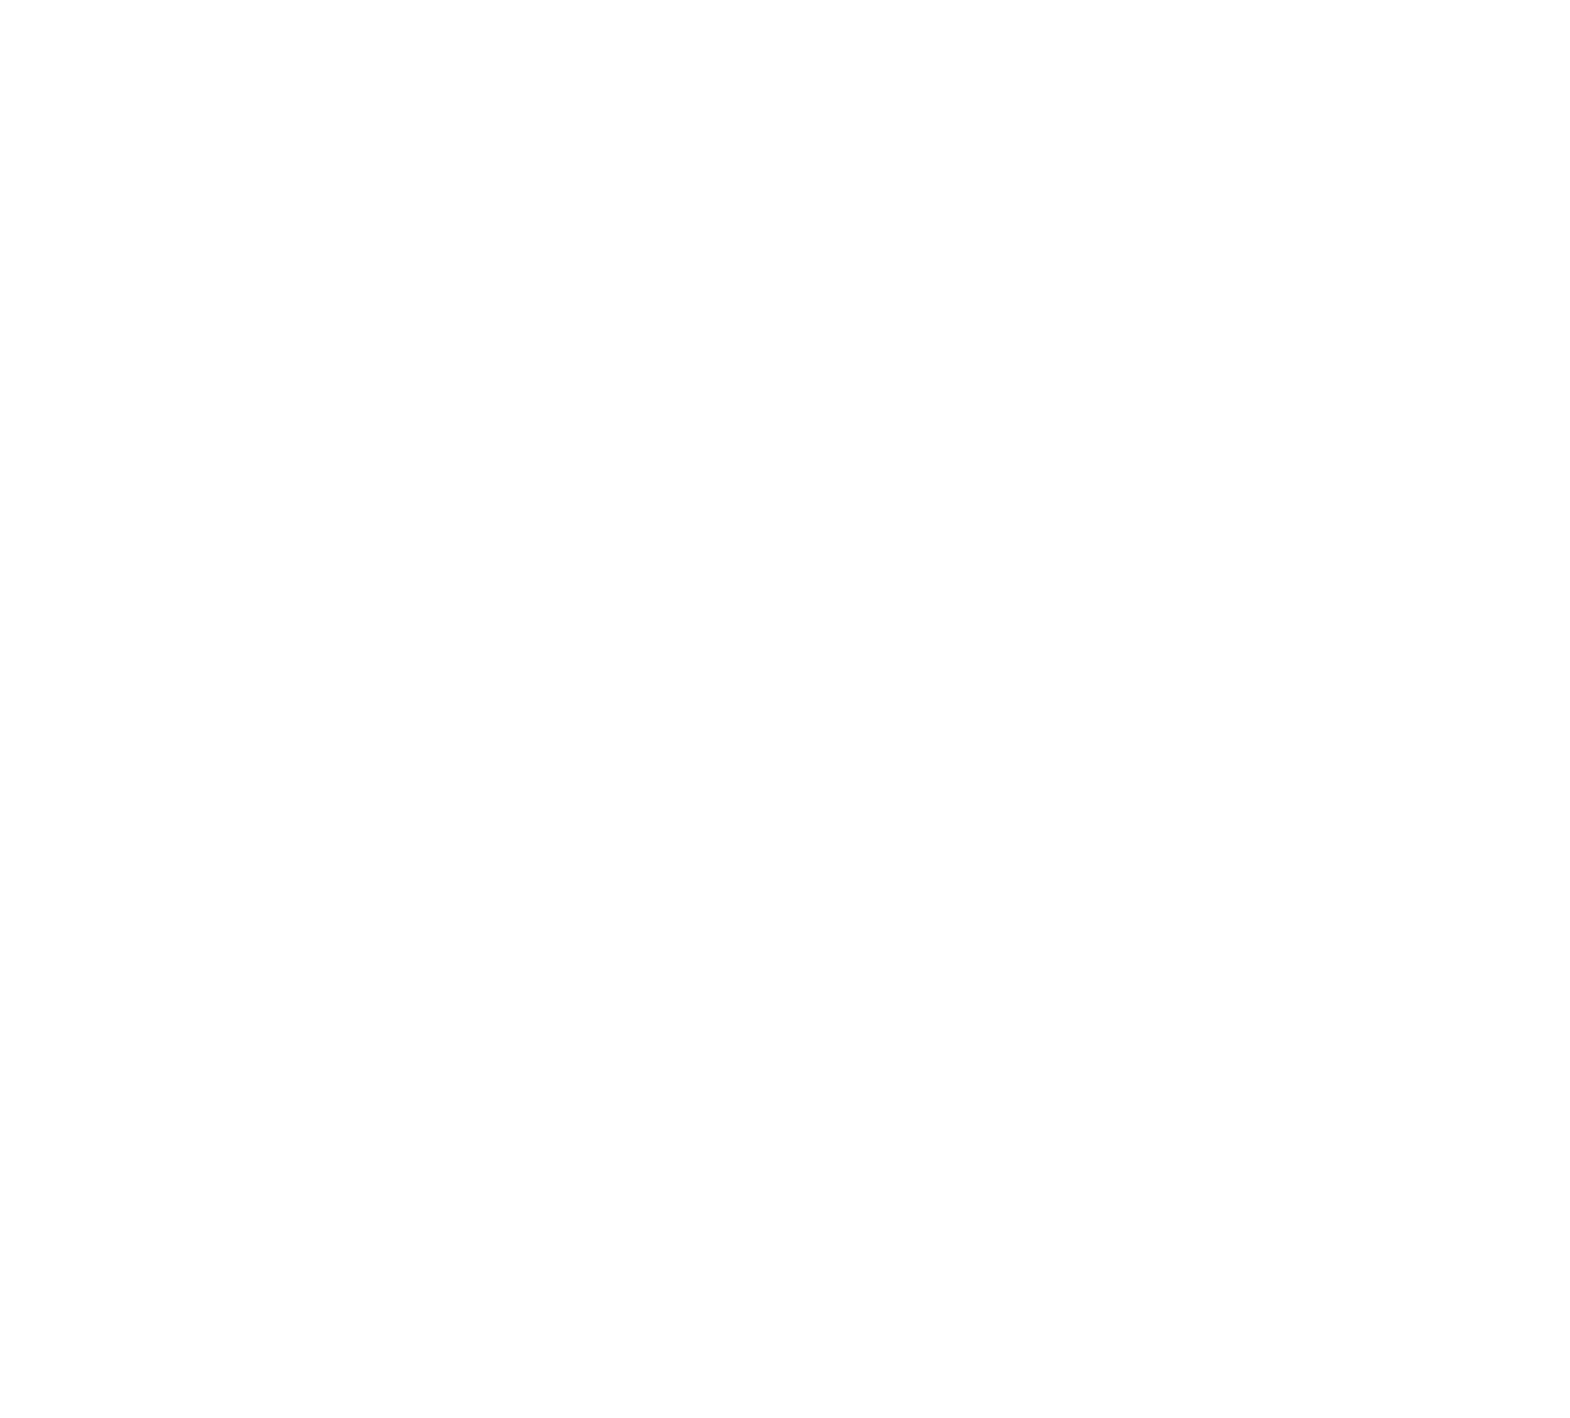 Bilibili logo for dark backgrounds (transparent PNG)